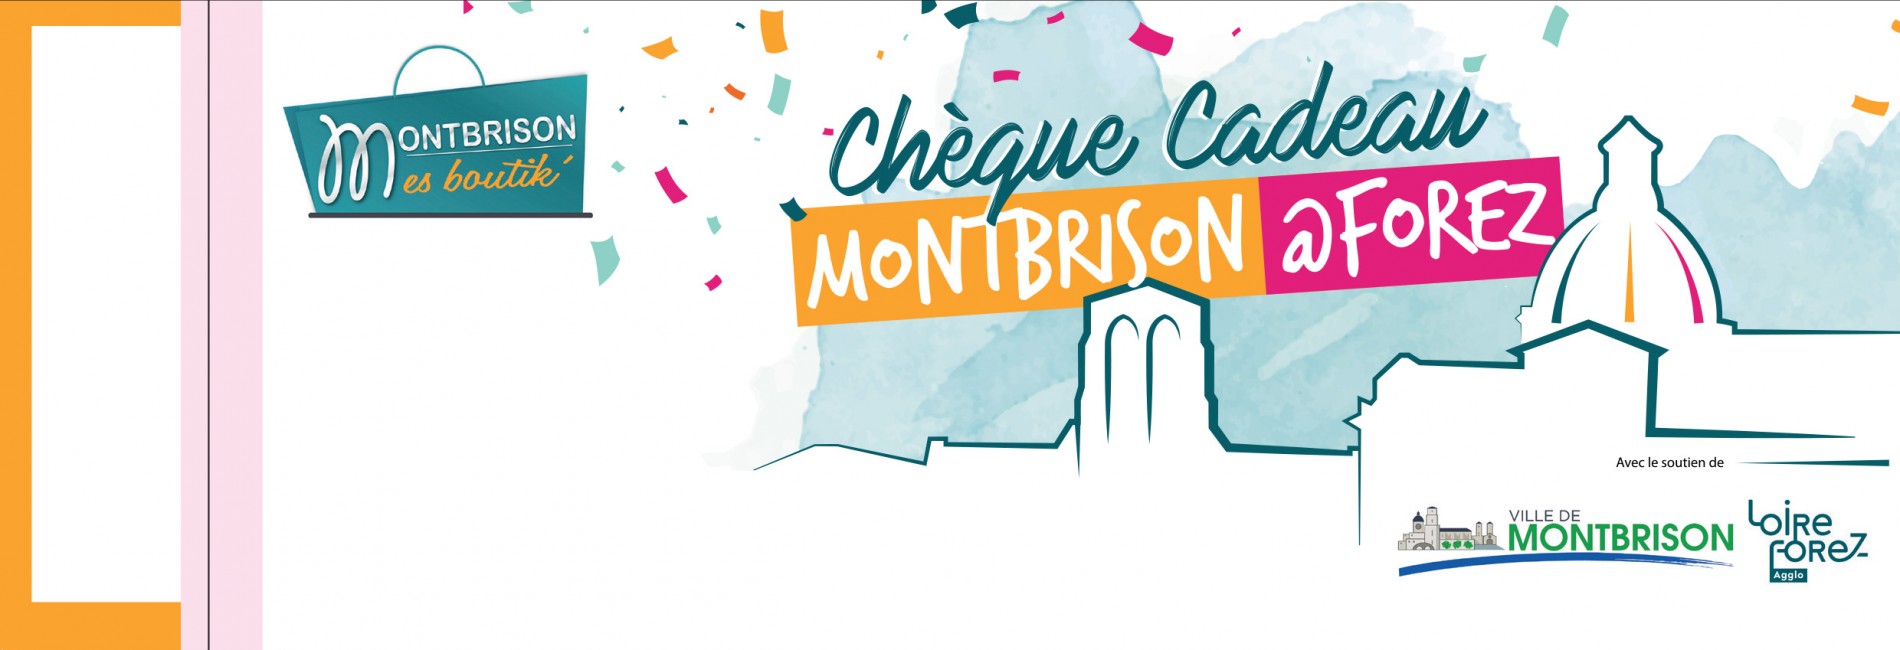 Montbrison Mes Boutik' - CHEQUE CADEAU MONTBRISON 